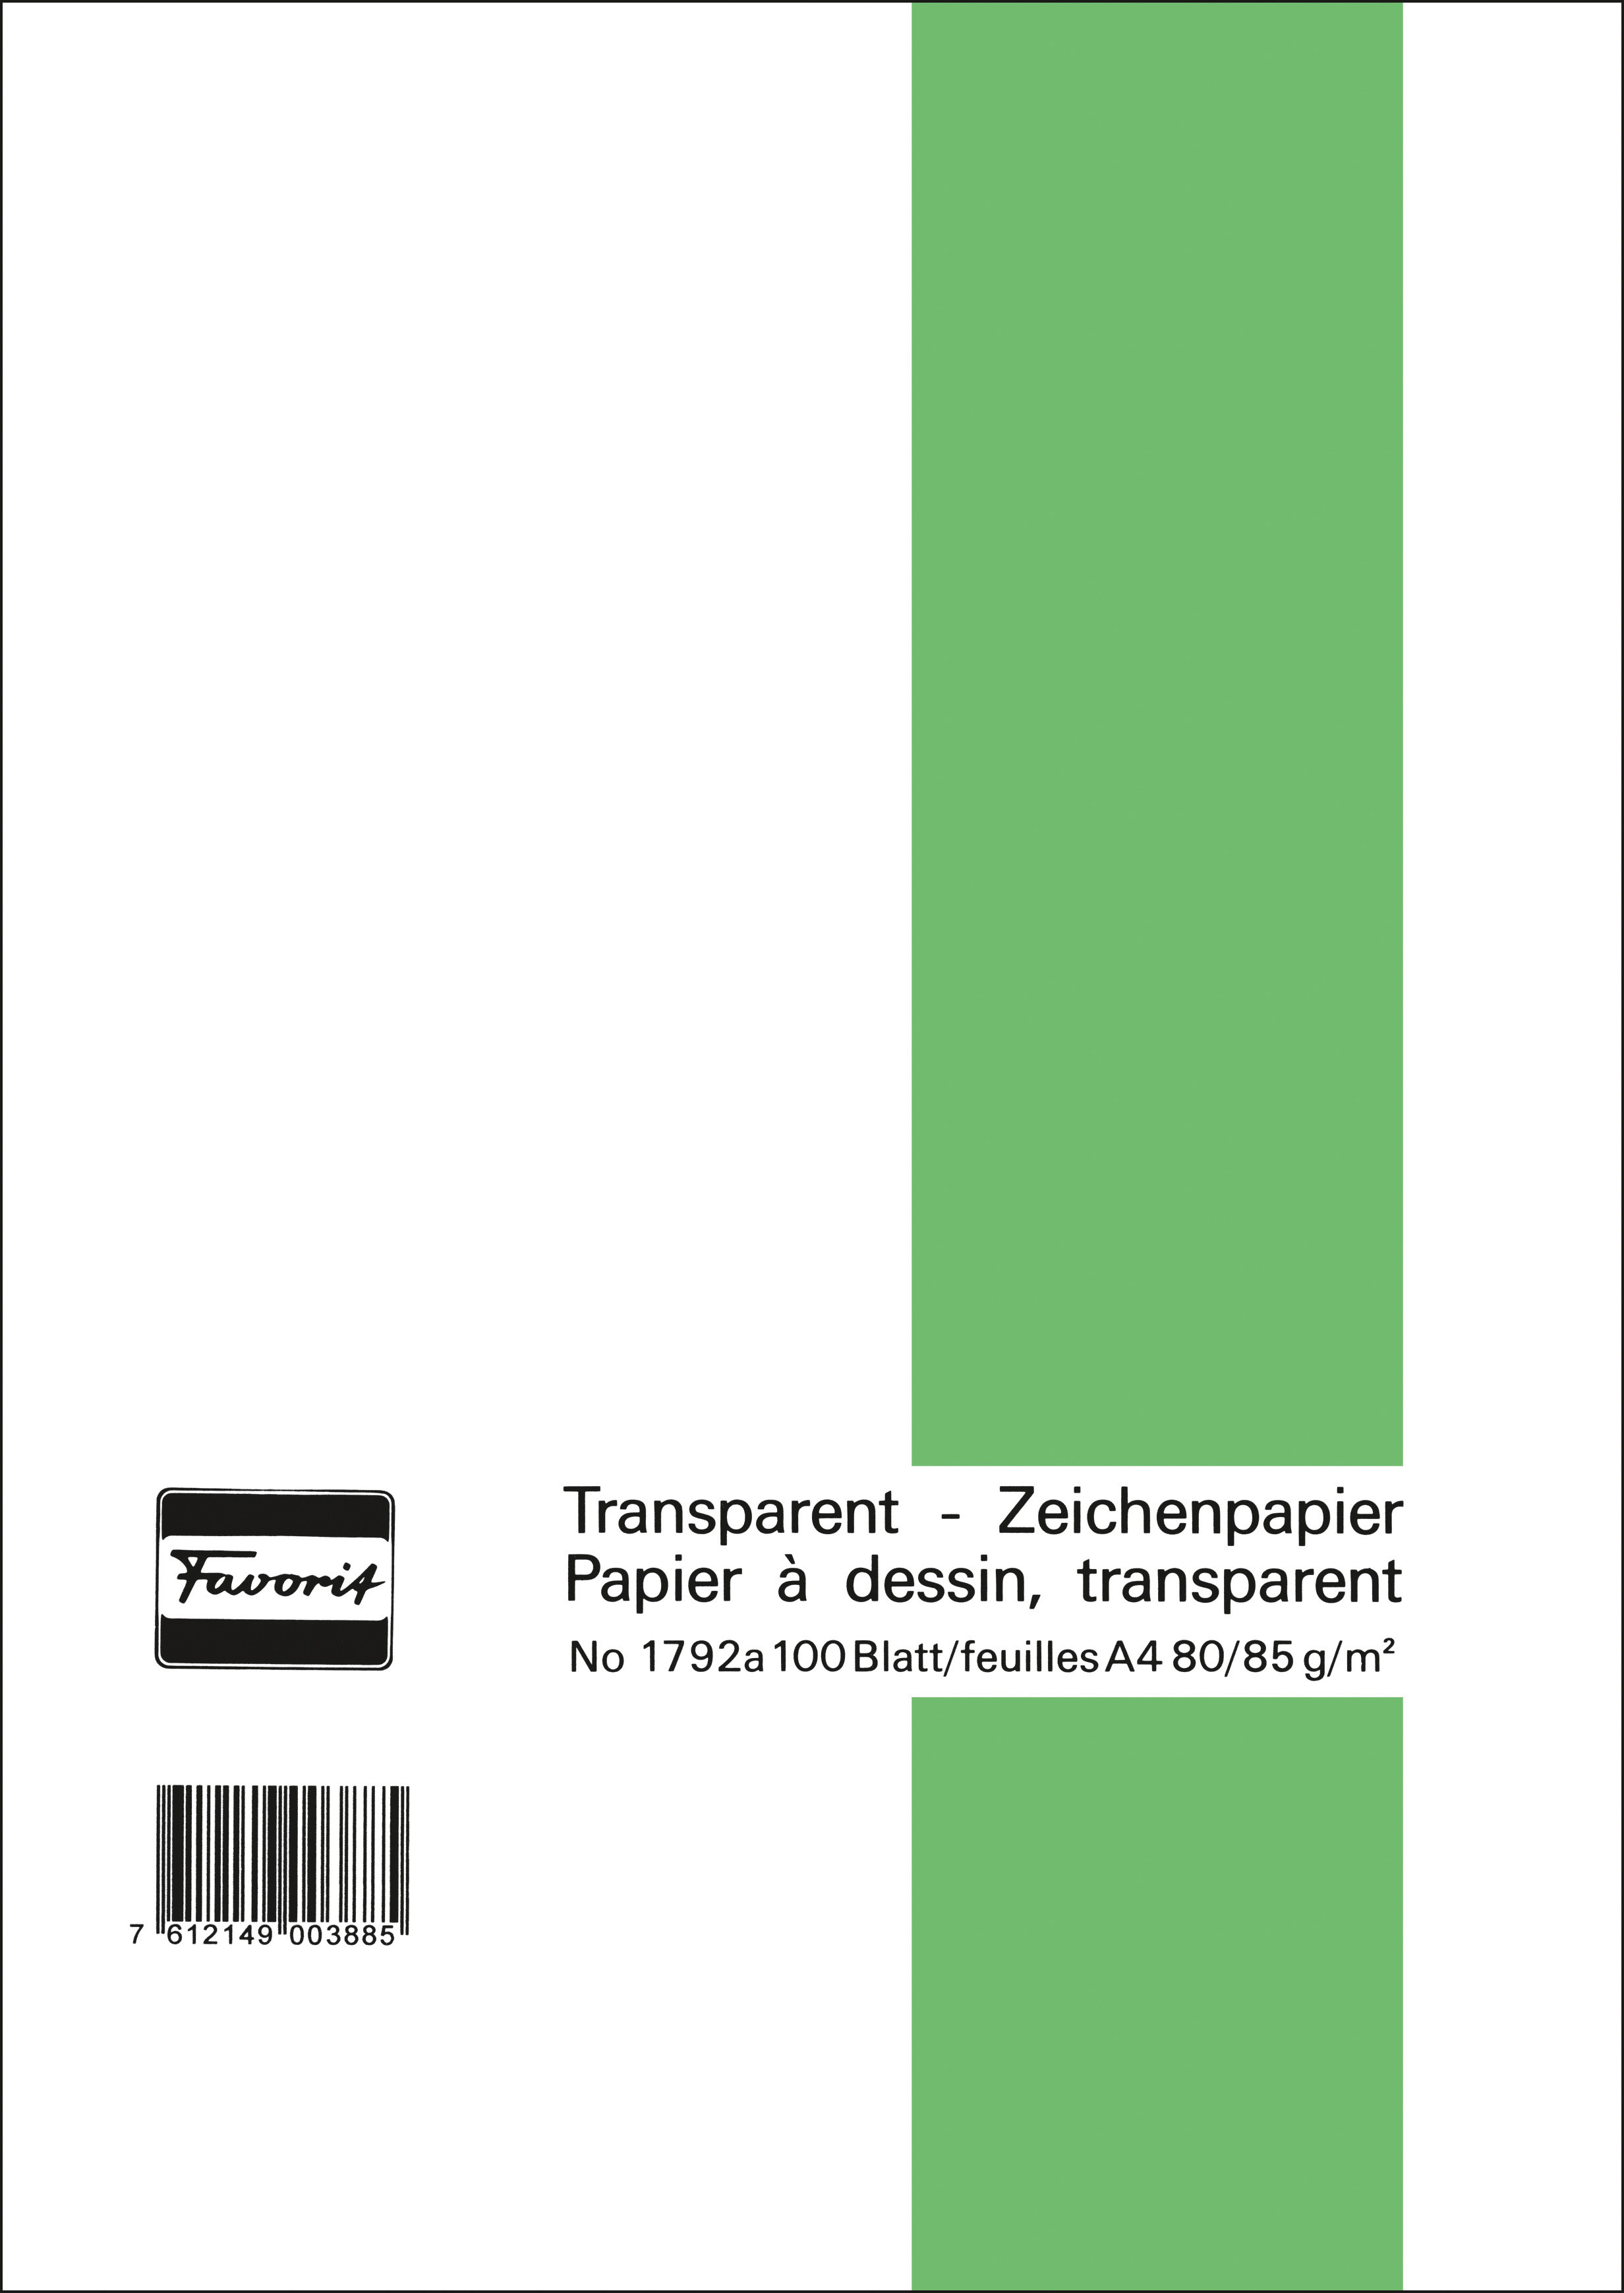 FAVORIT Transparentpapier A4 1792 A 80/85g 100 Blatt